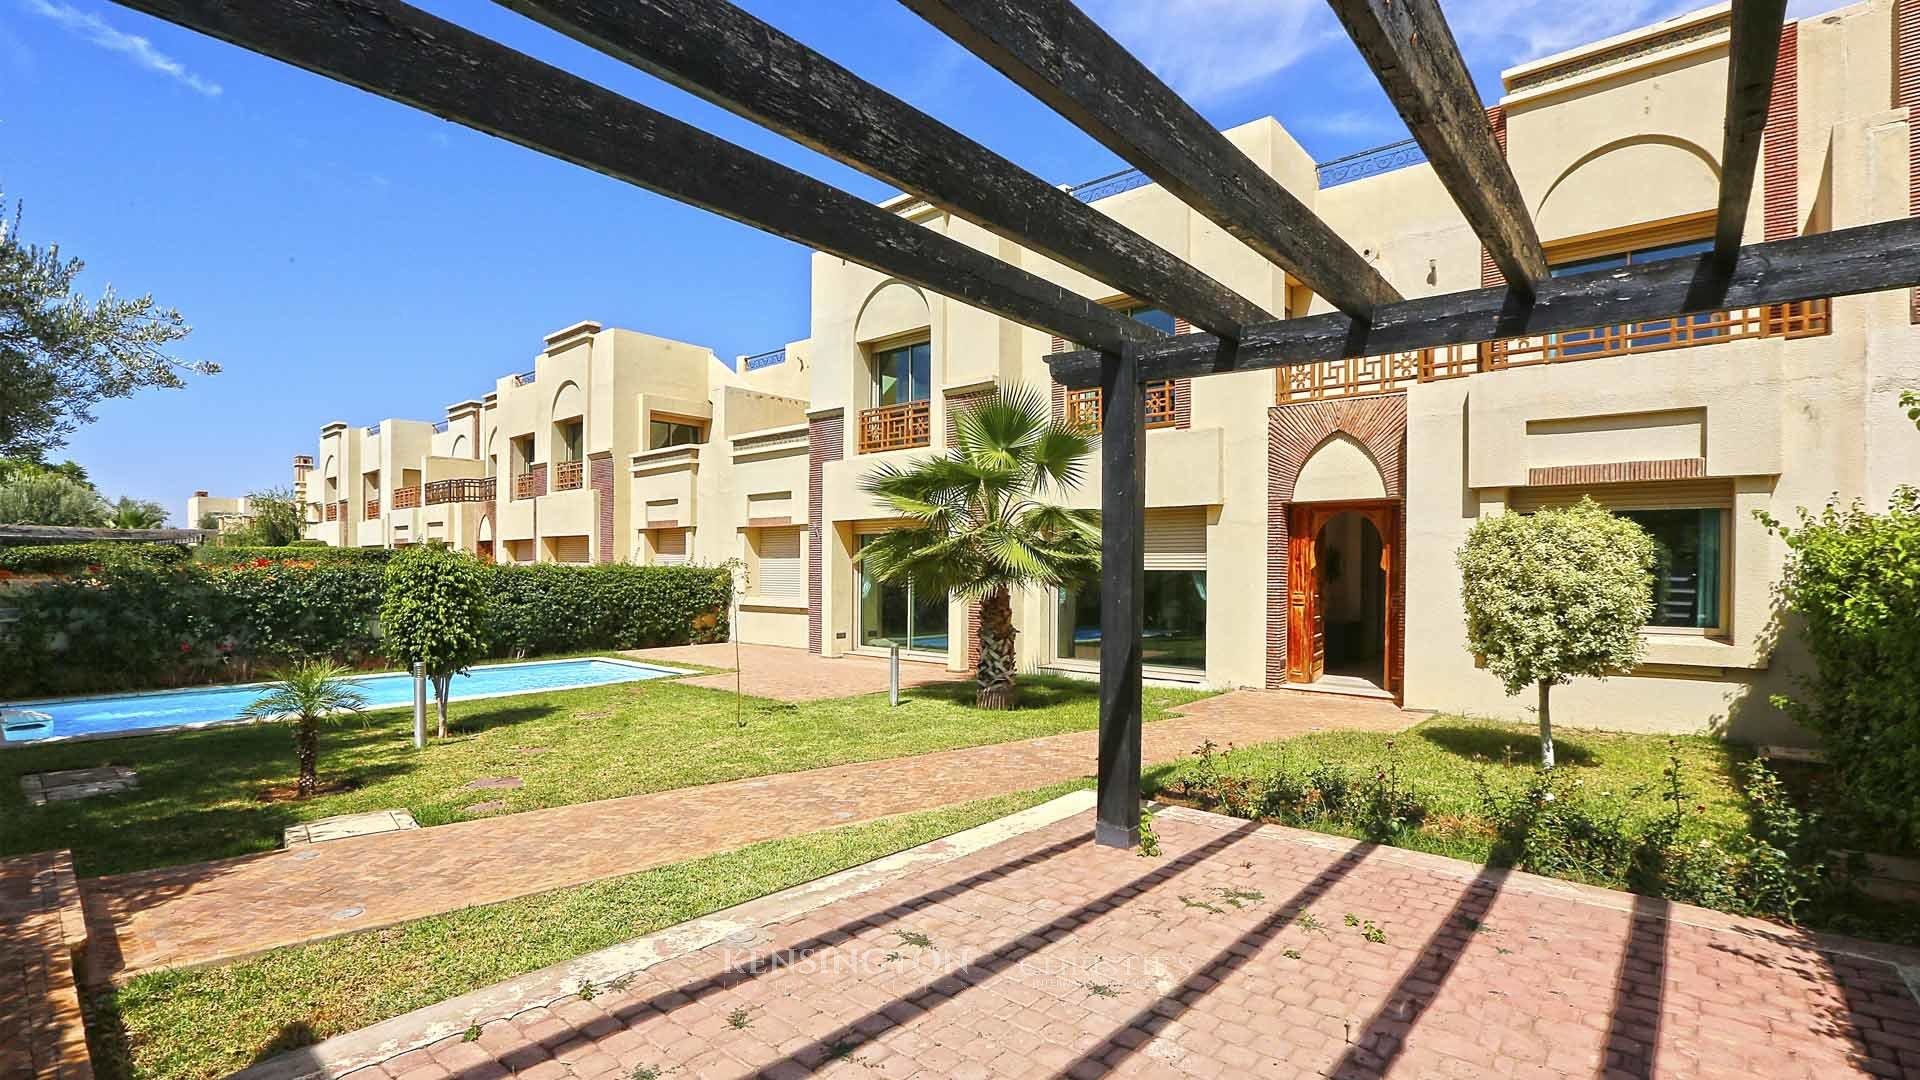 Villa Dalia in Marrakech, Morocco